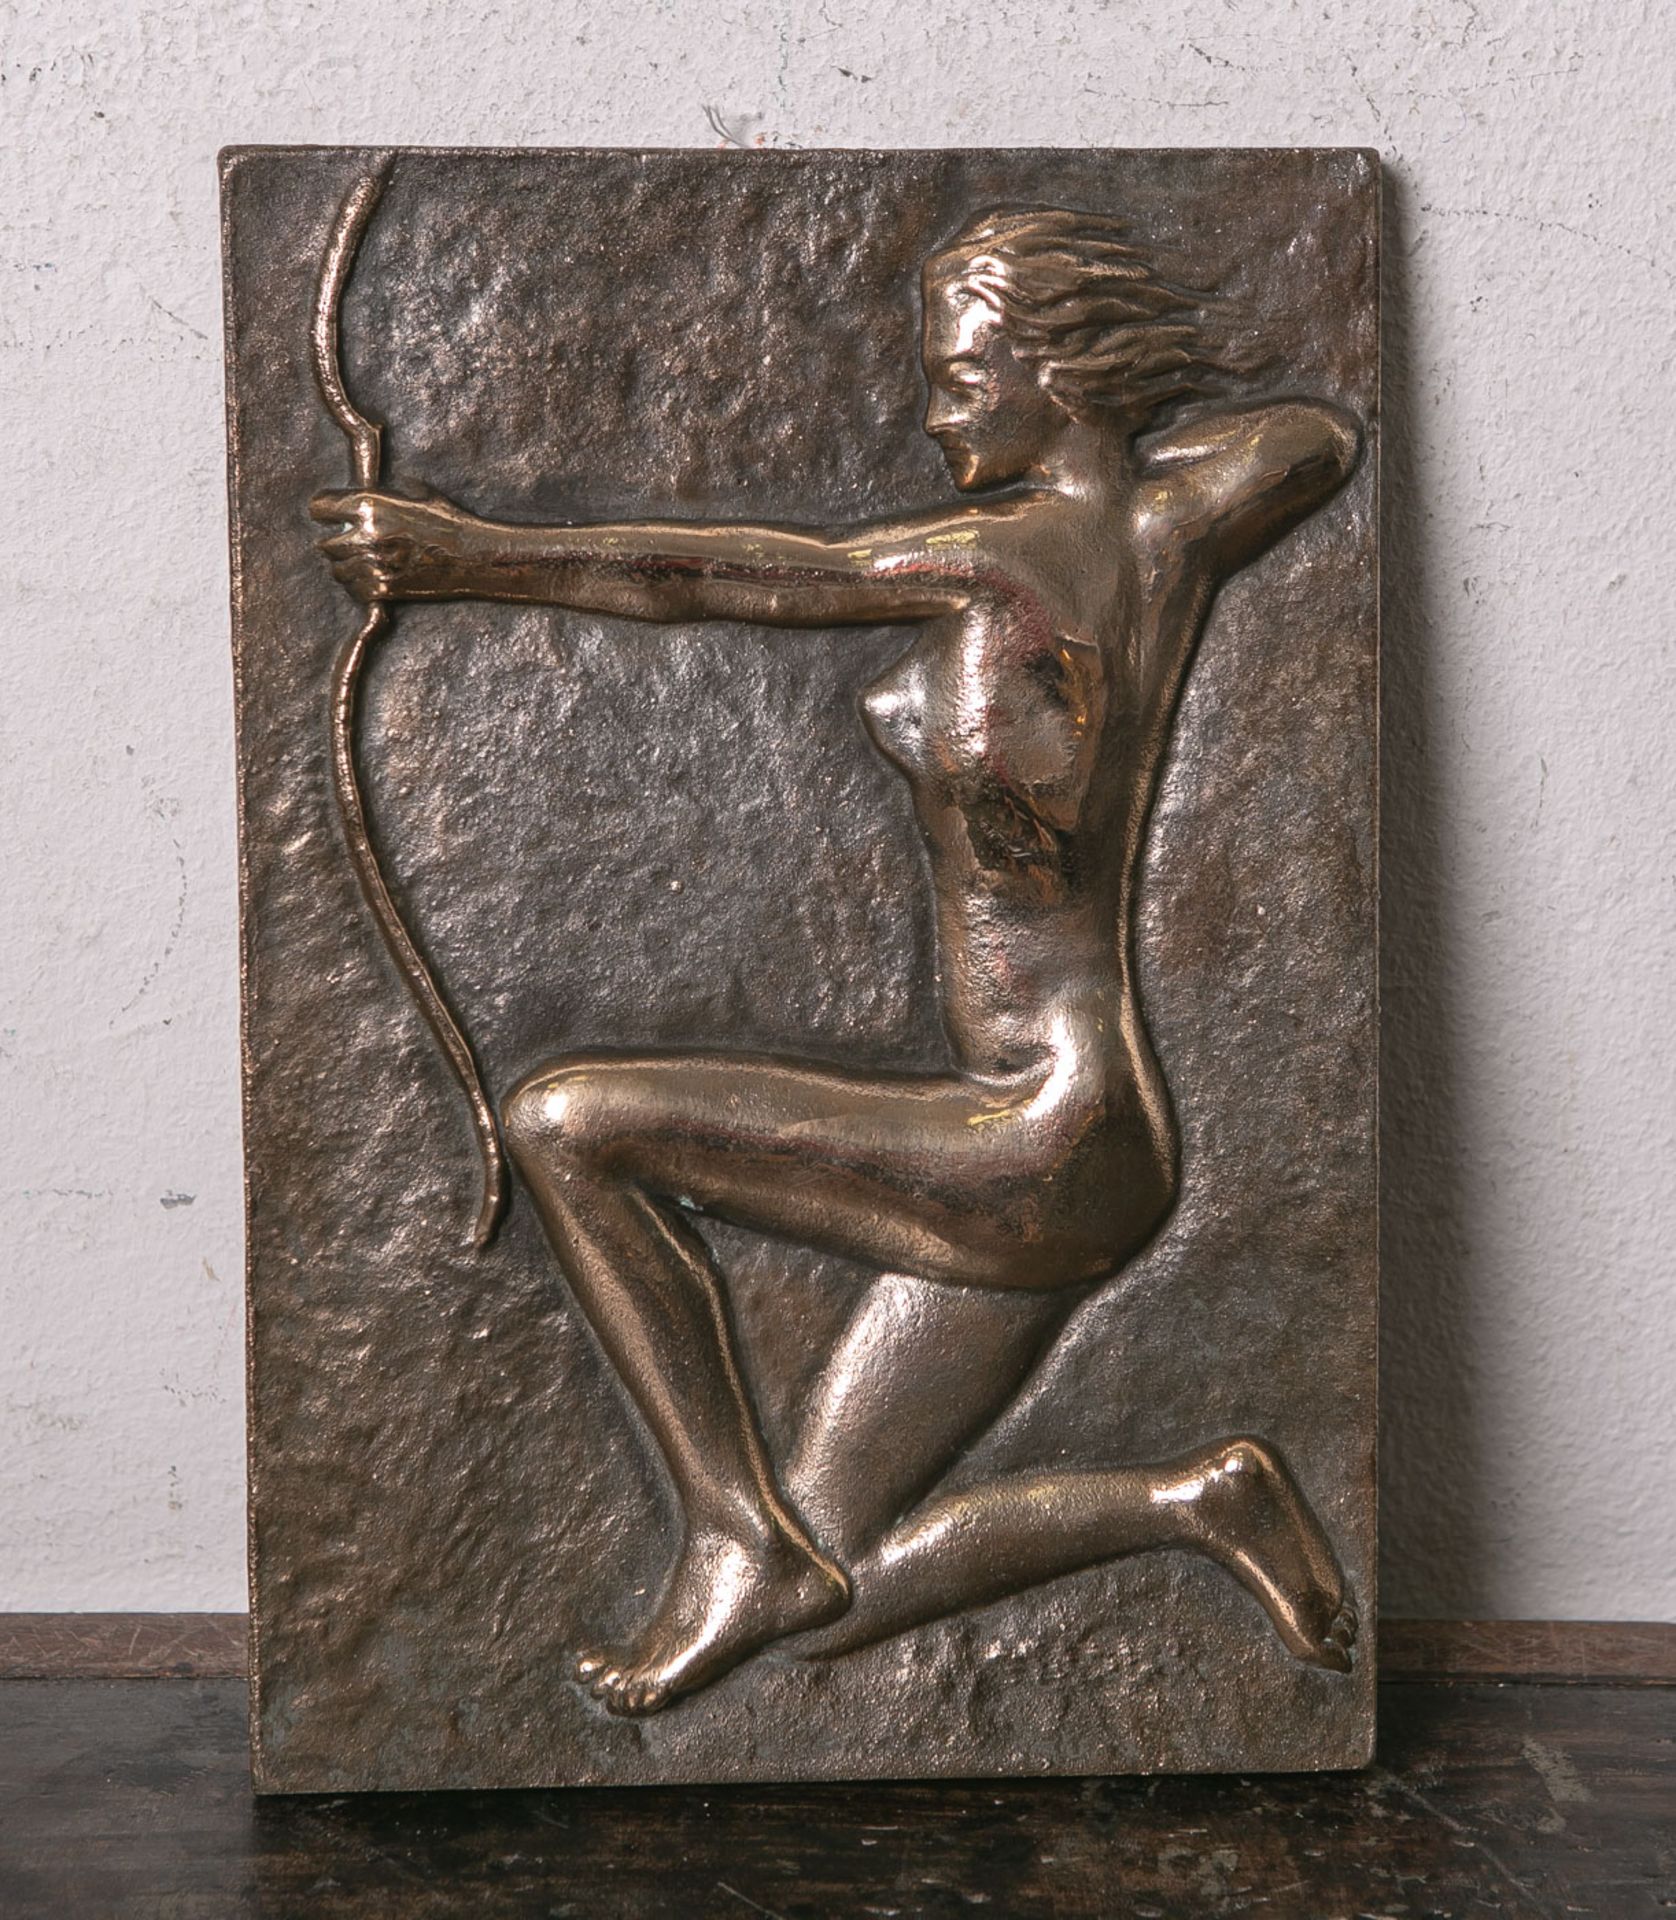 Unbekannter Künstler (wohl 1950/60er Jahre), wohl Darstellung Dianas knieend mit Bogen,Bildplatte